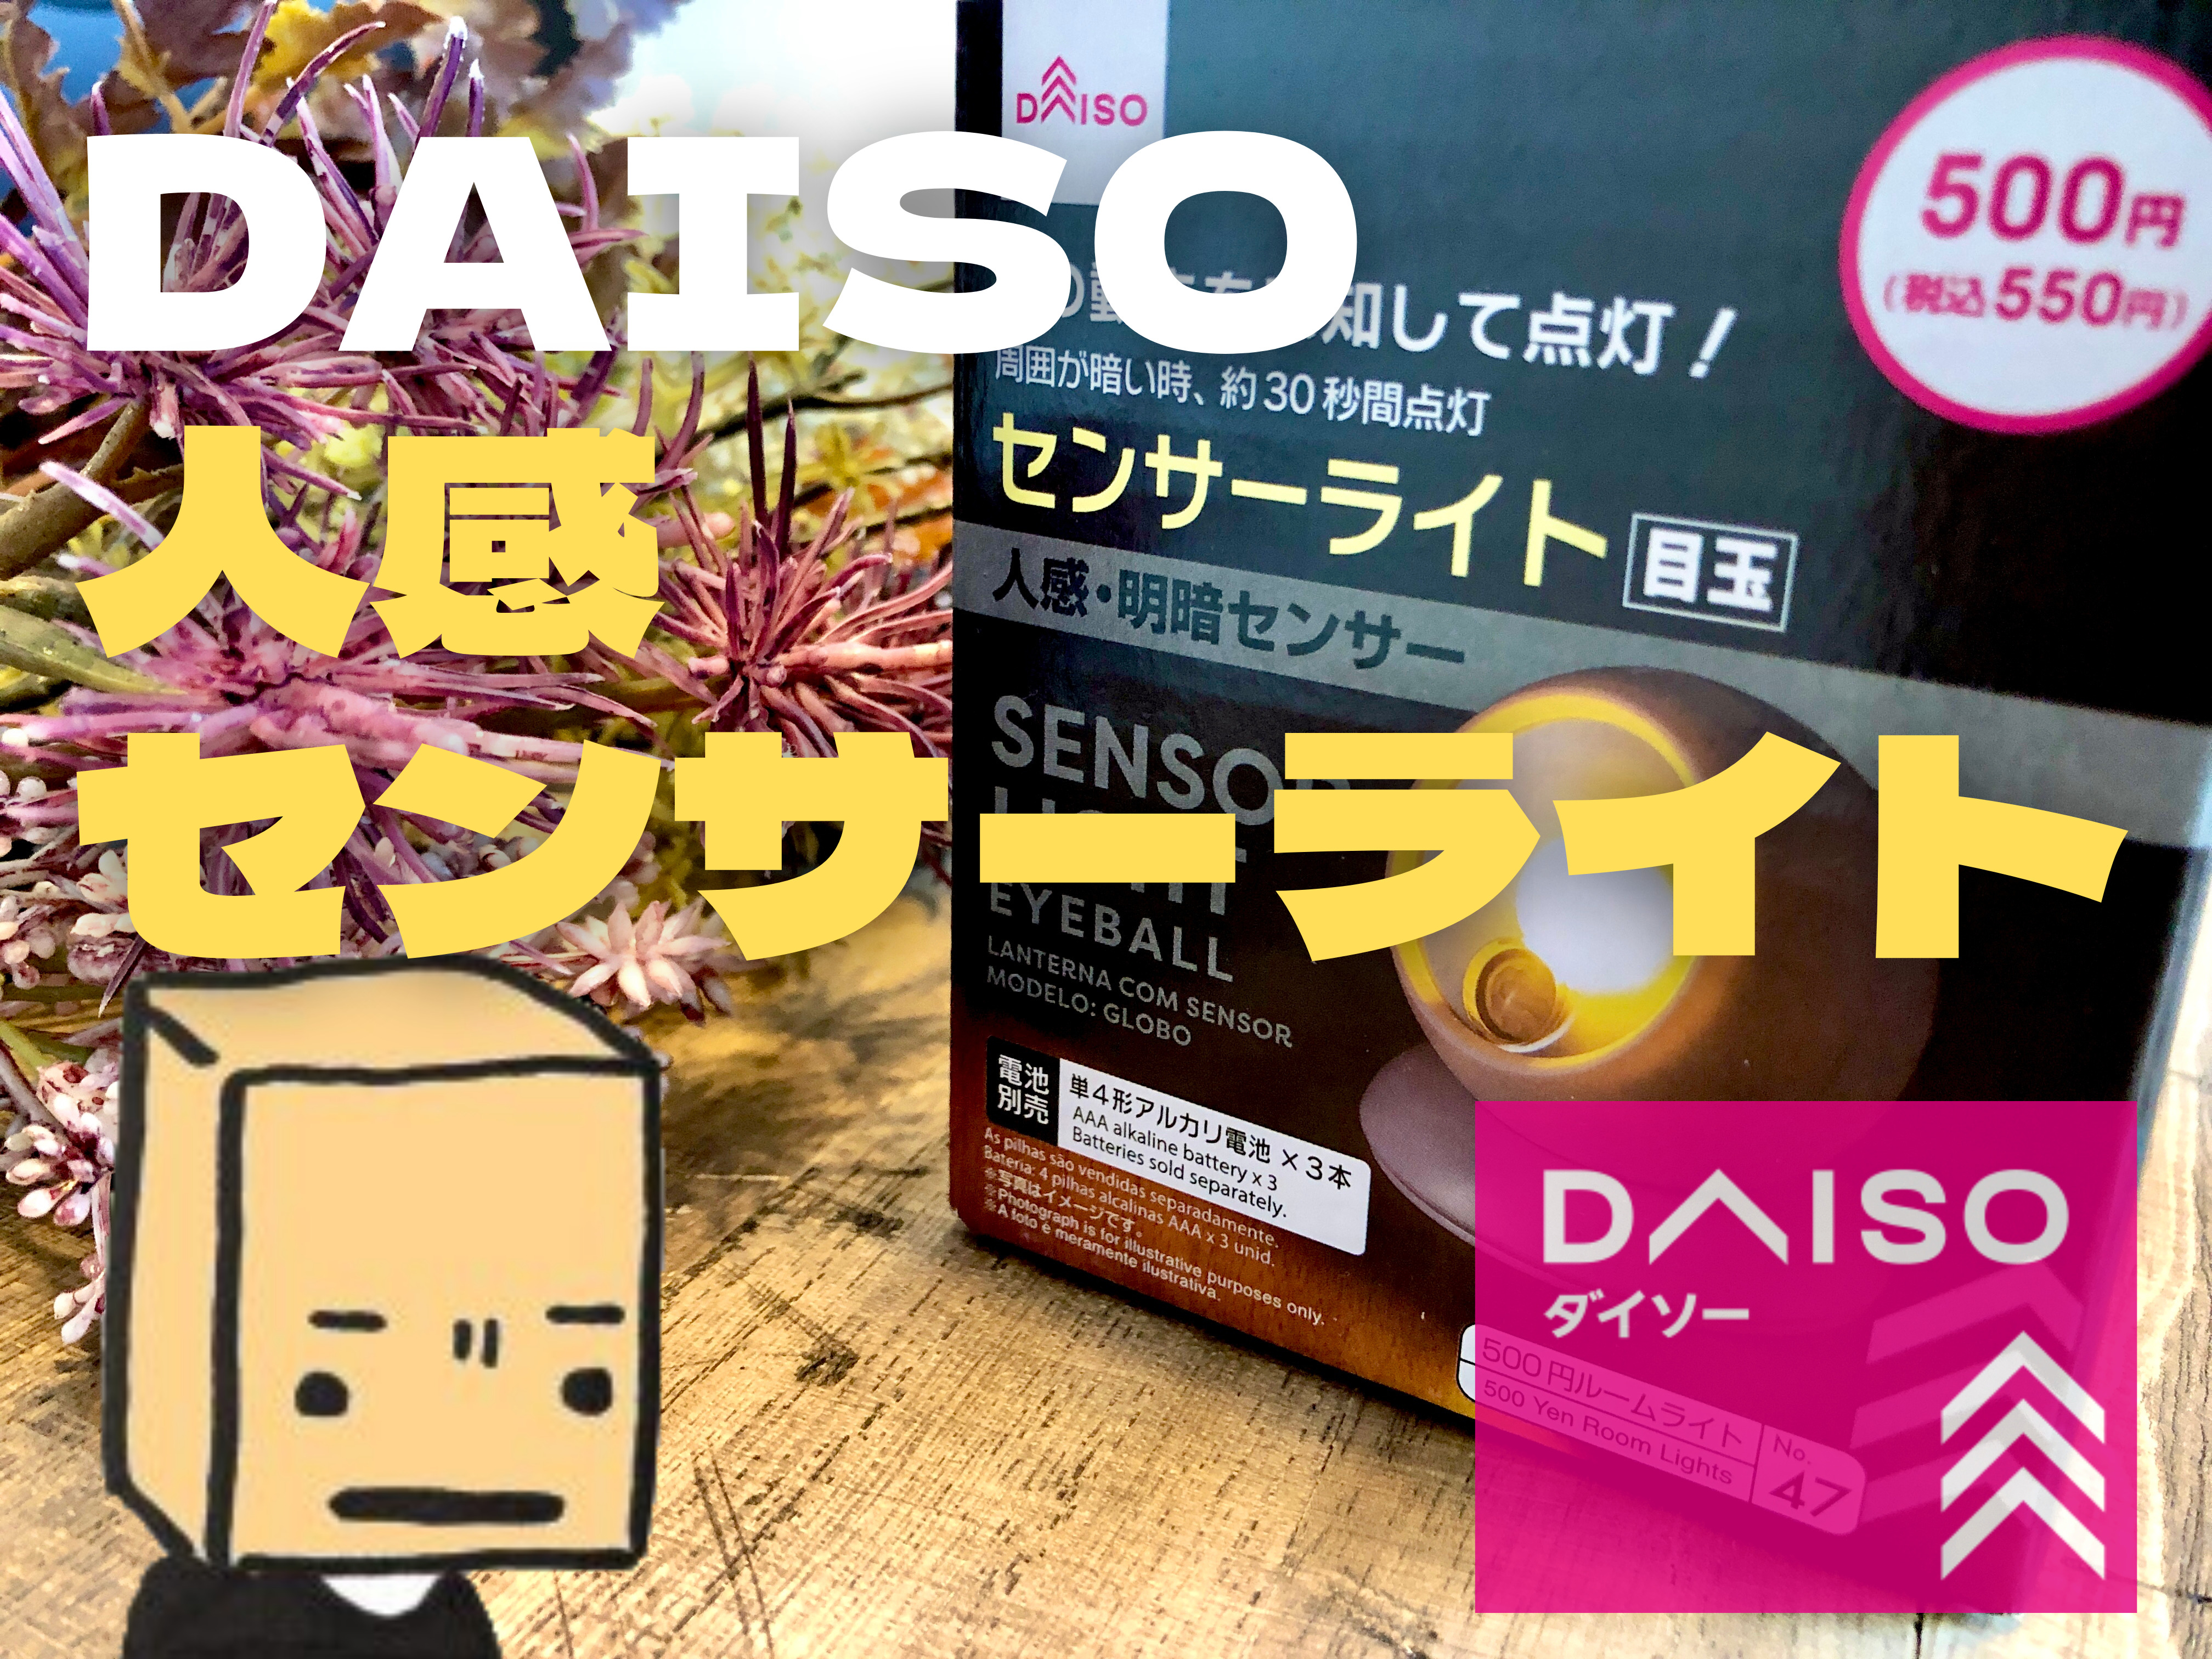 Daiso 人感センサーライトが500円で買える時代なのだ ちゃんと使える ぱつログ Hmp2blog